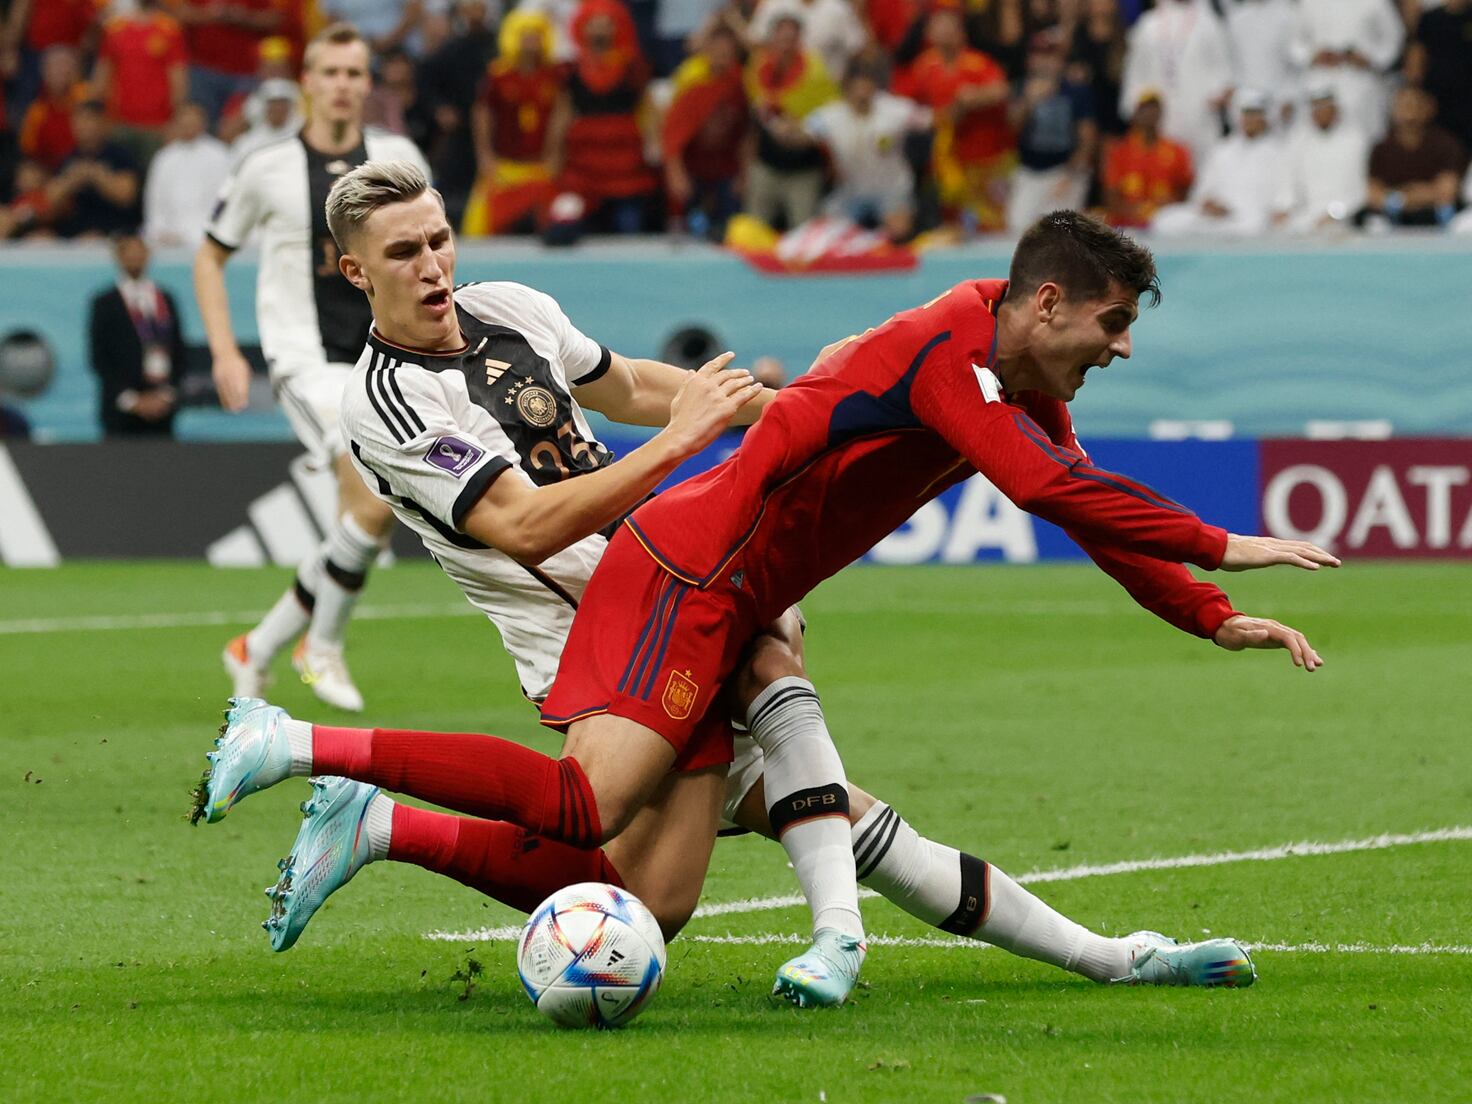 Spain vs Germany summary: score, goals, highlights 1-1